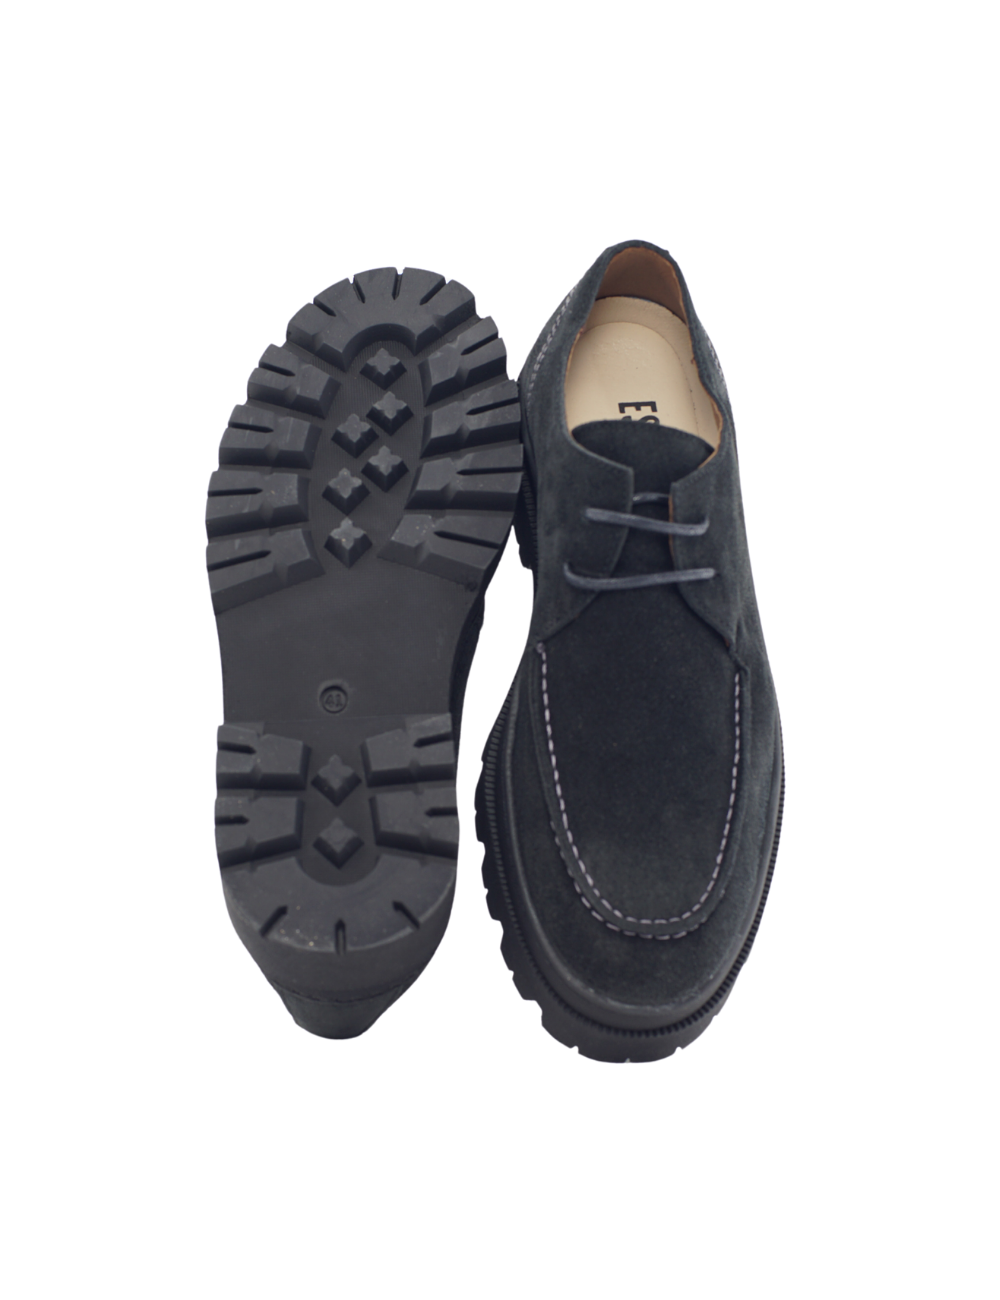 Zapatos Minimalistas de Vestir EOK Shoes – Blog del Runner